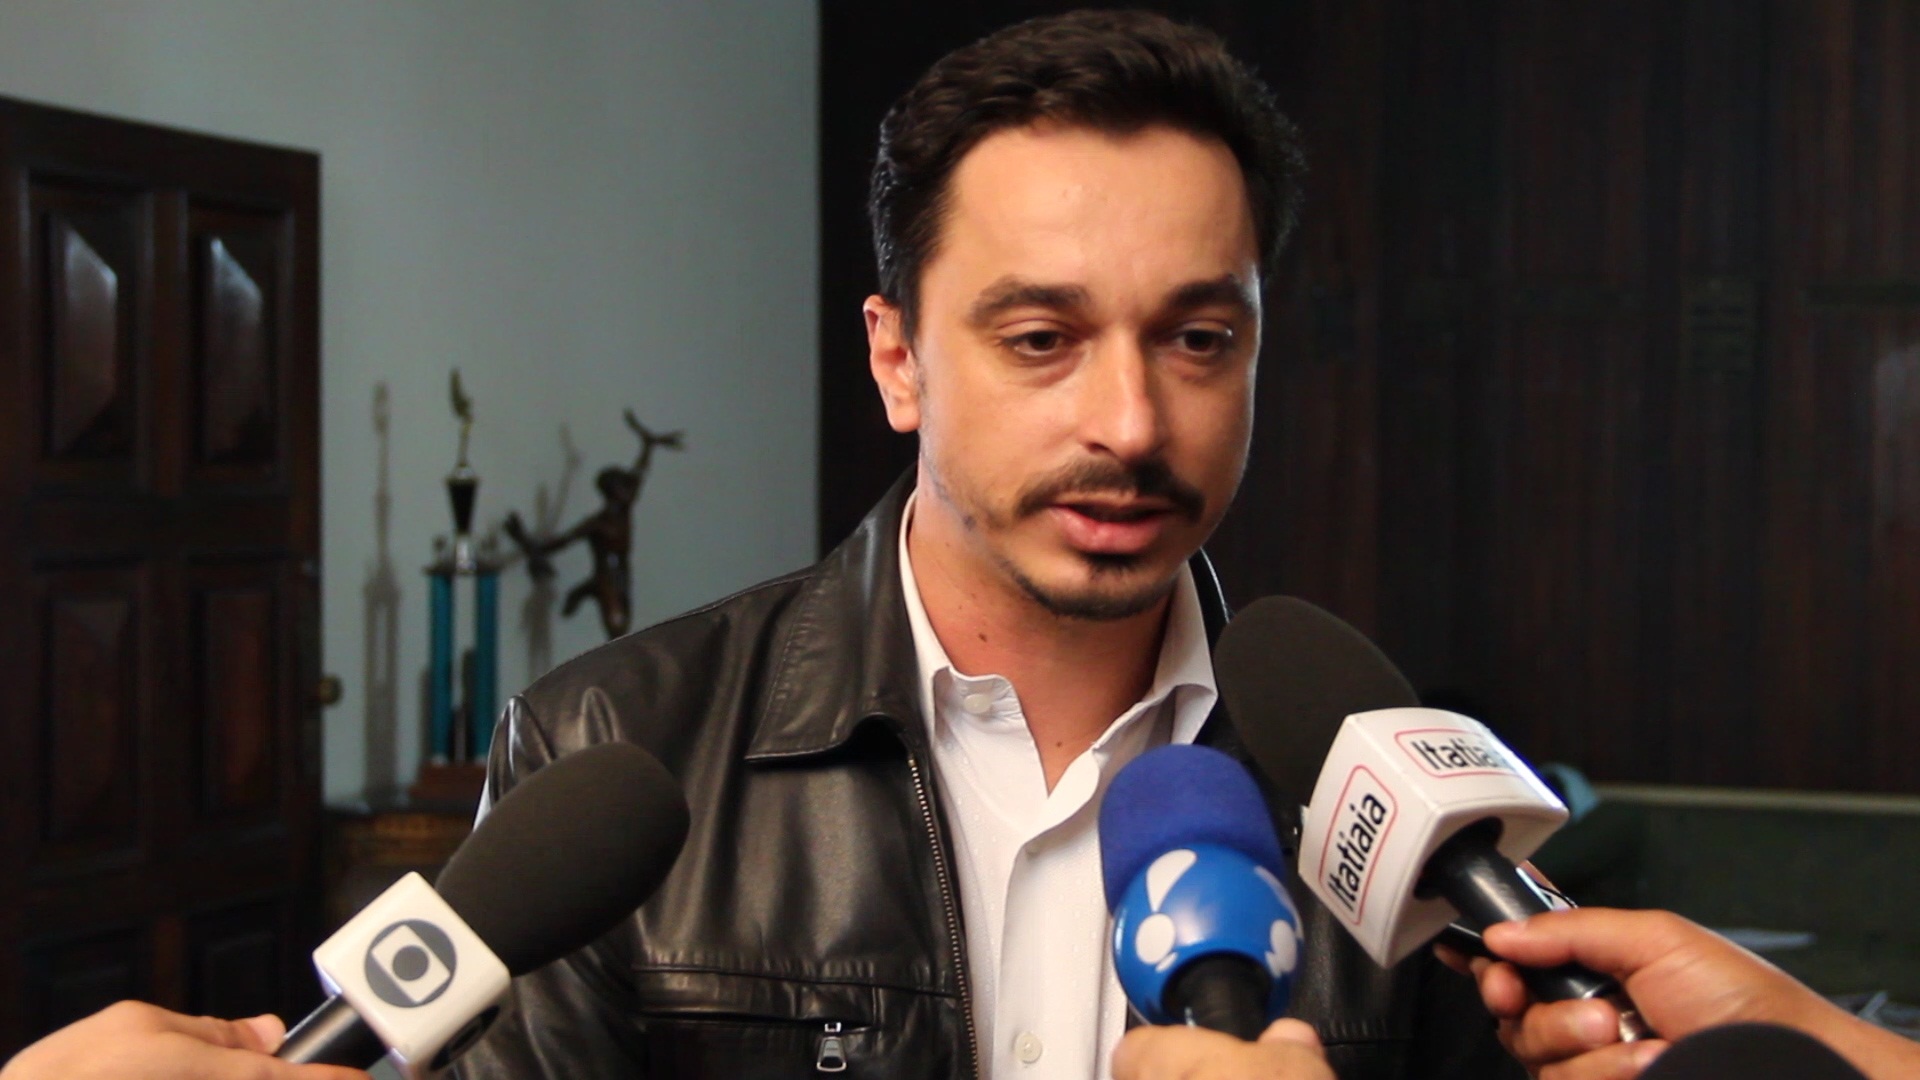 Sindicato defende federalização das investigações de crimes contra jornalistas